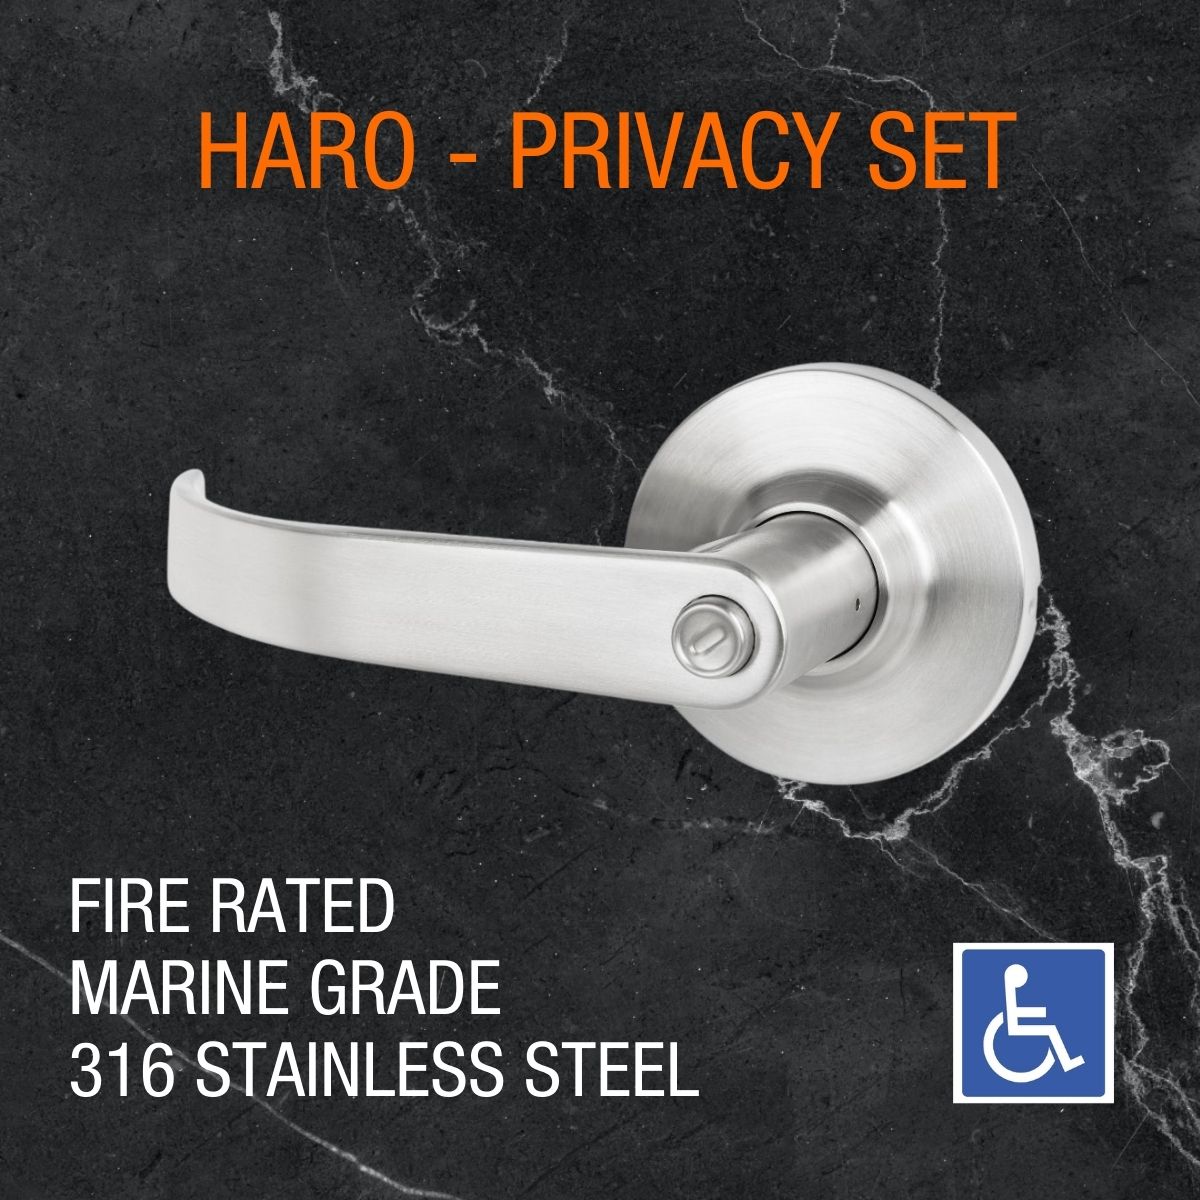 dda door handle haro fire rated privacy 316 marine grade 1